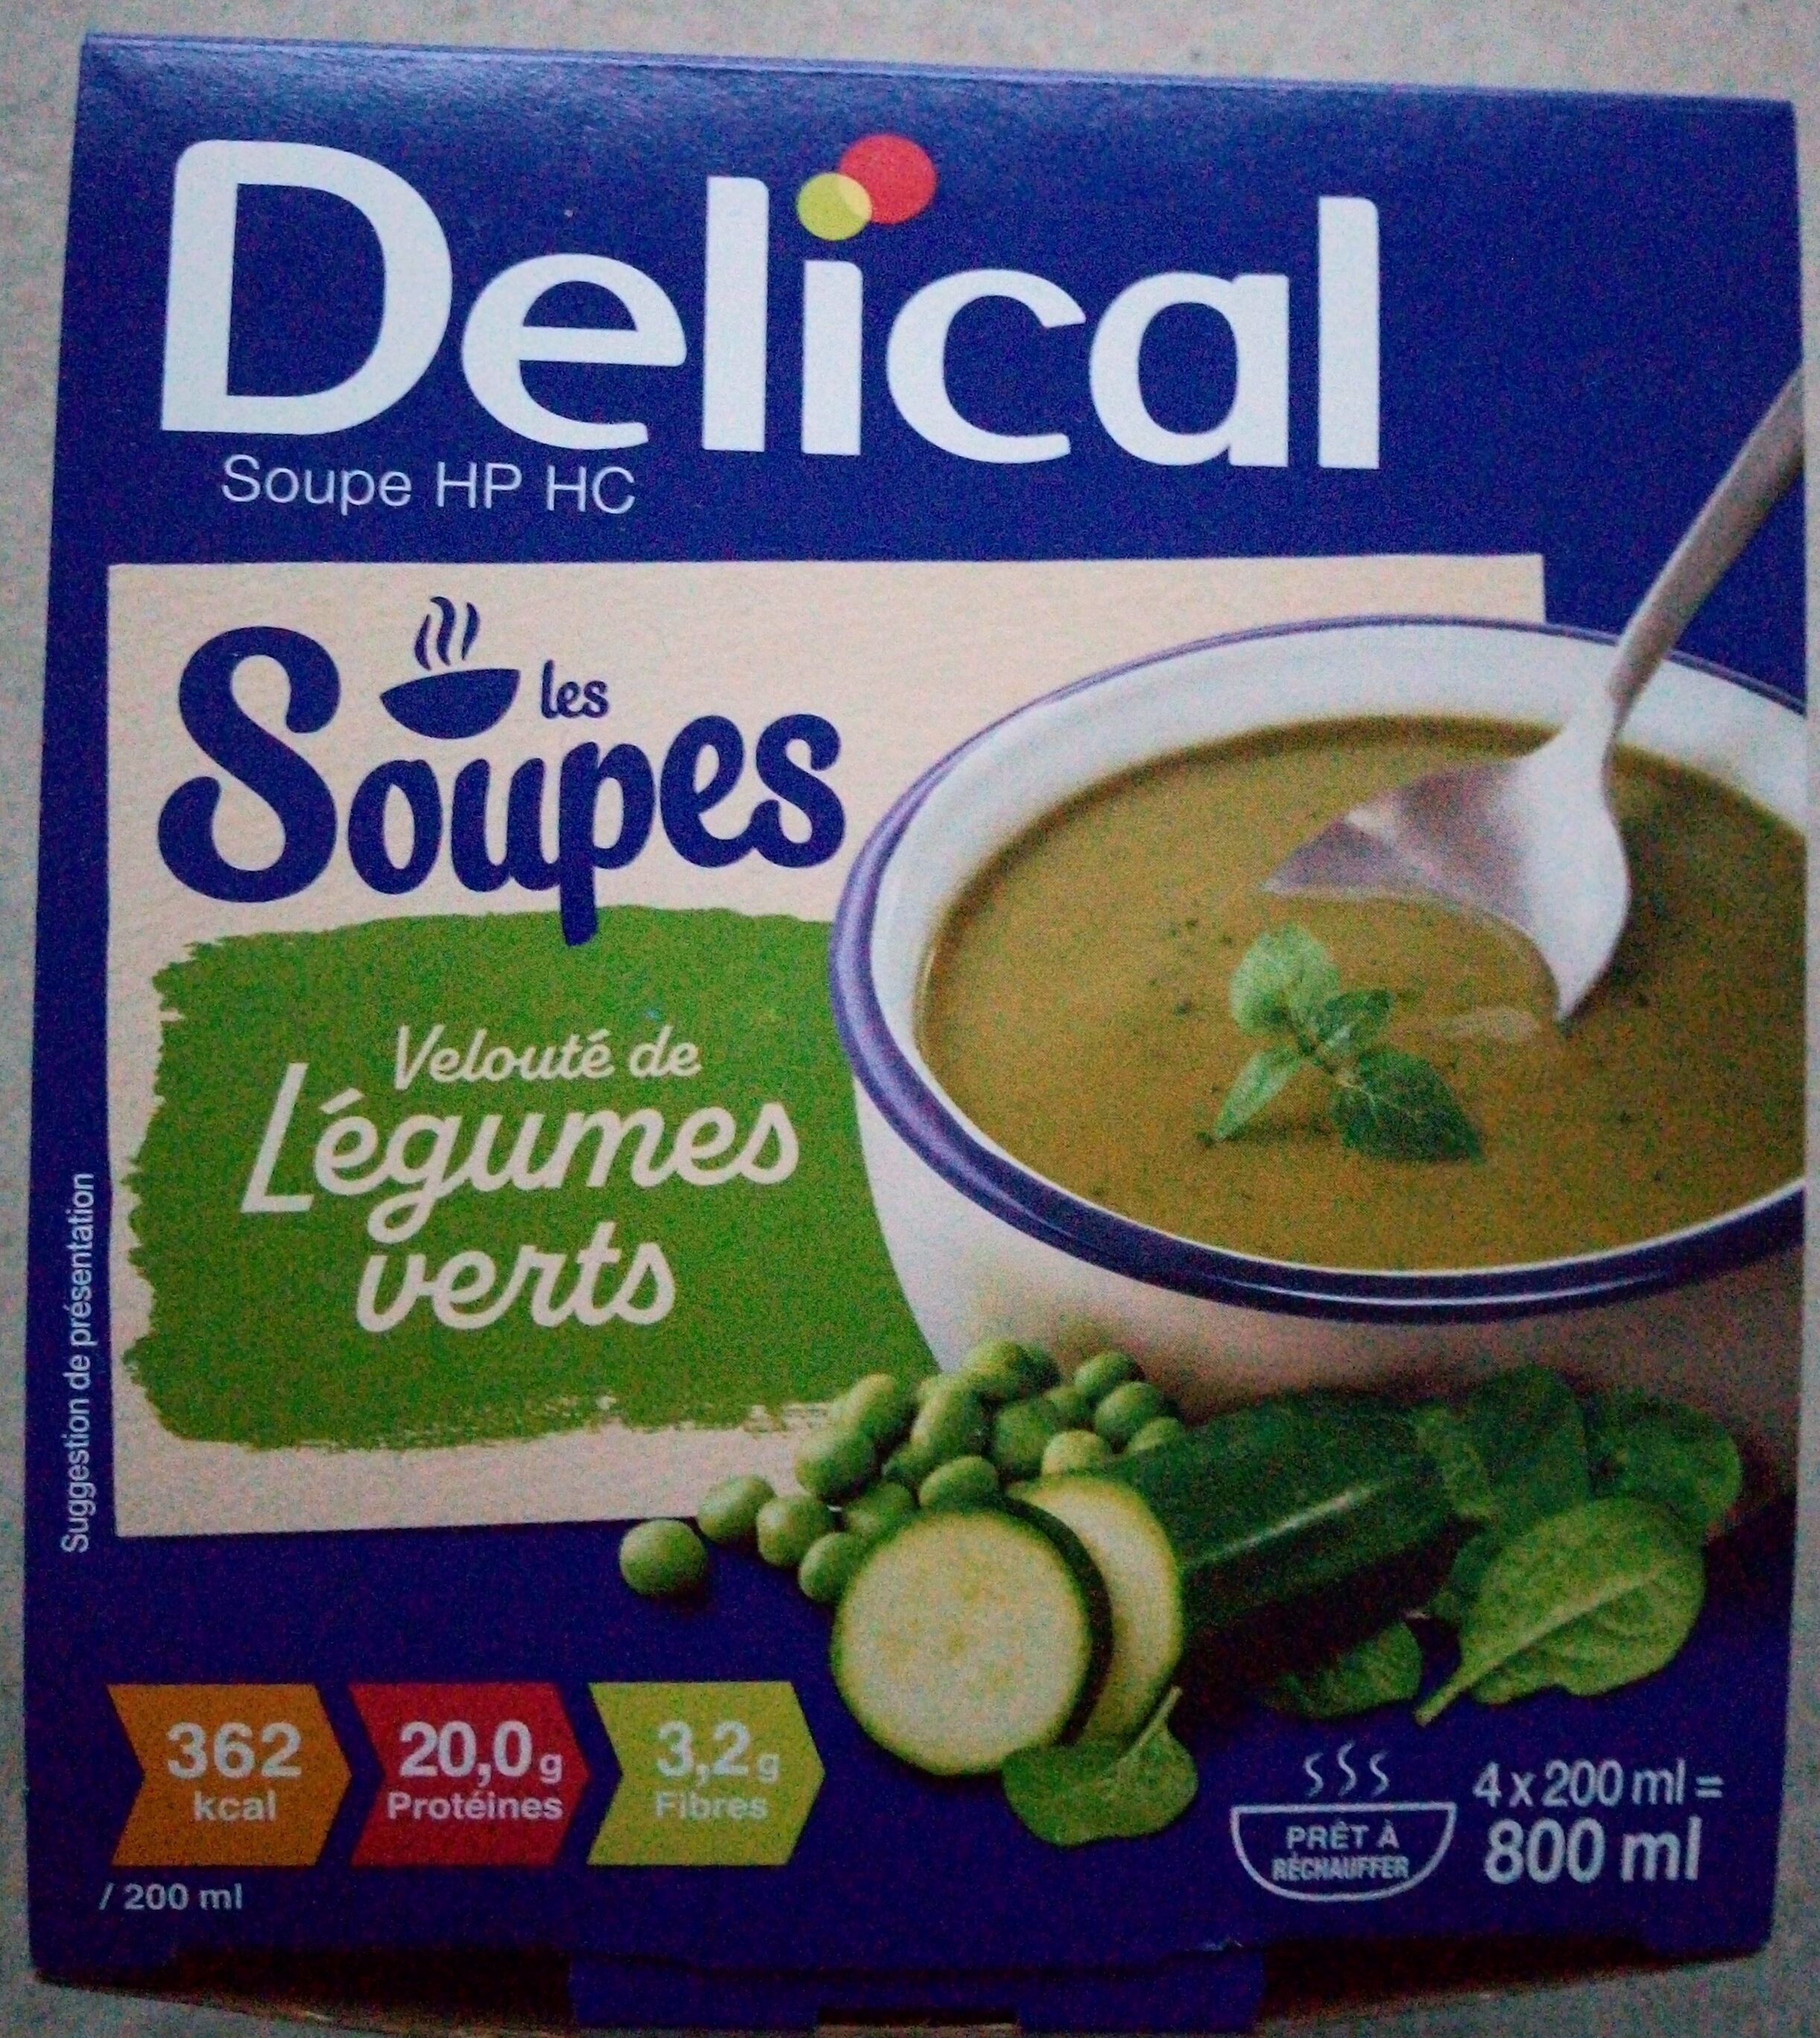 Les Soupes - Velouté de légumes verts - Product - fr